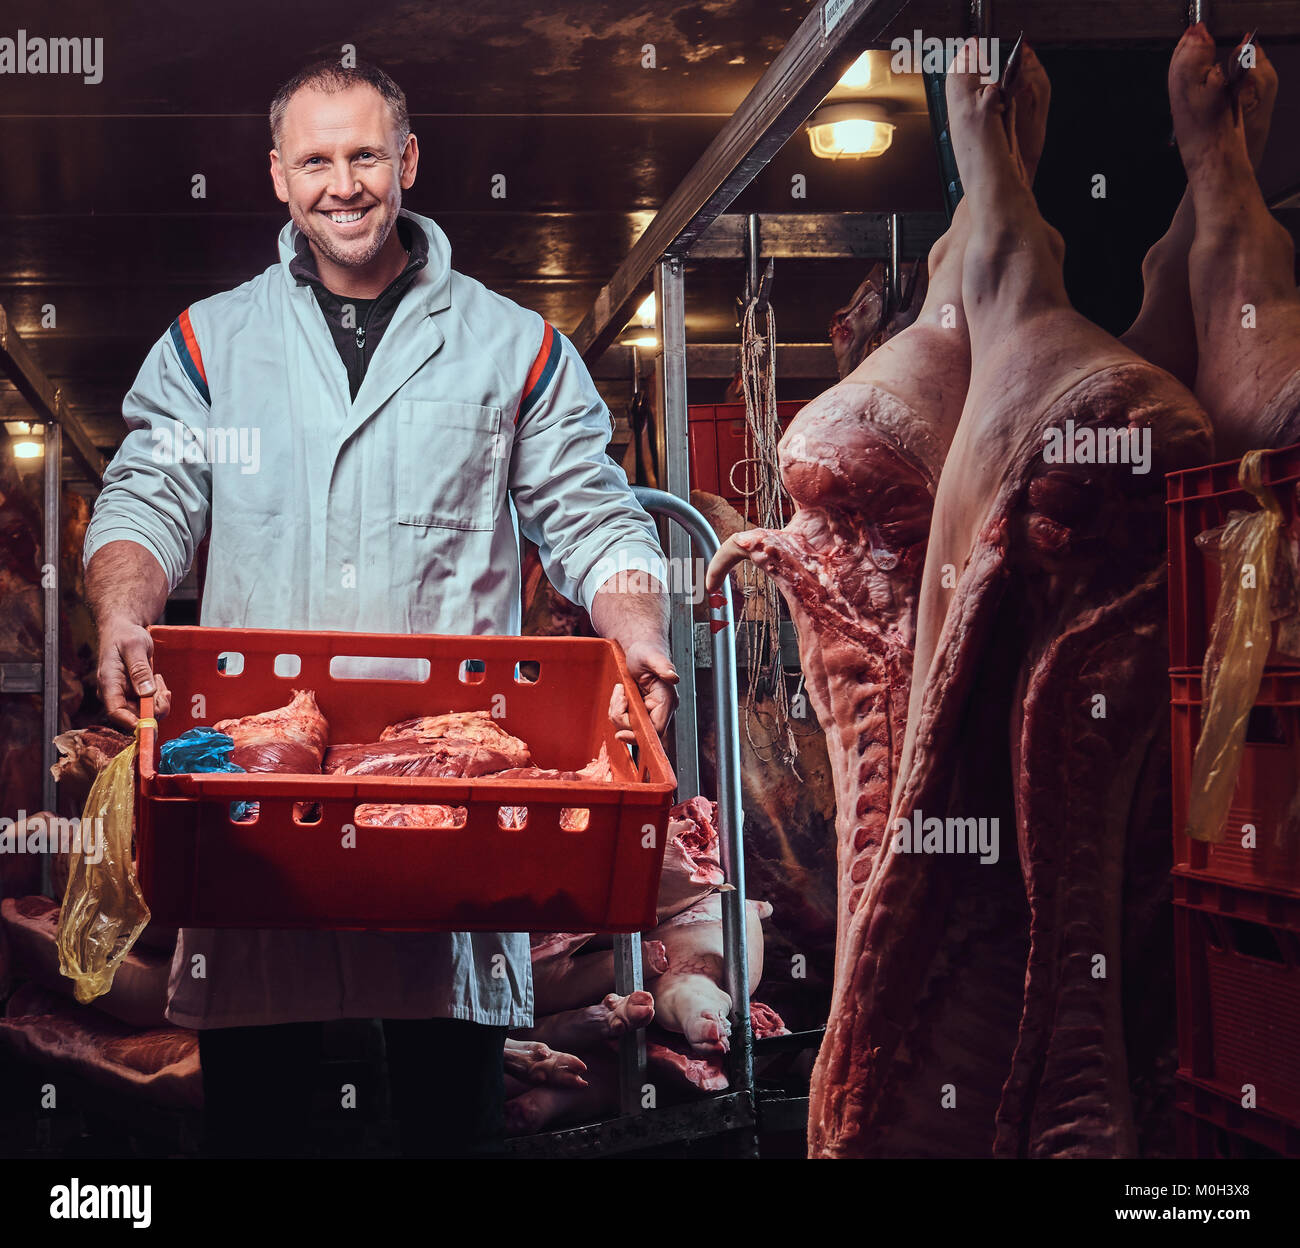 Der Metzger in einem Fleisch Gefrierschrank Stockfotografie - Alamy